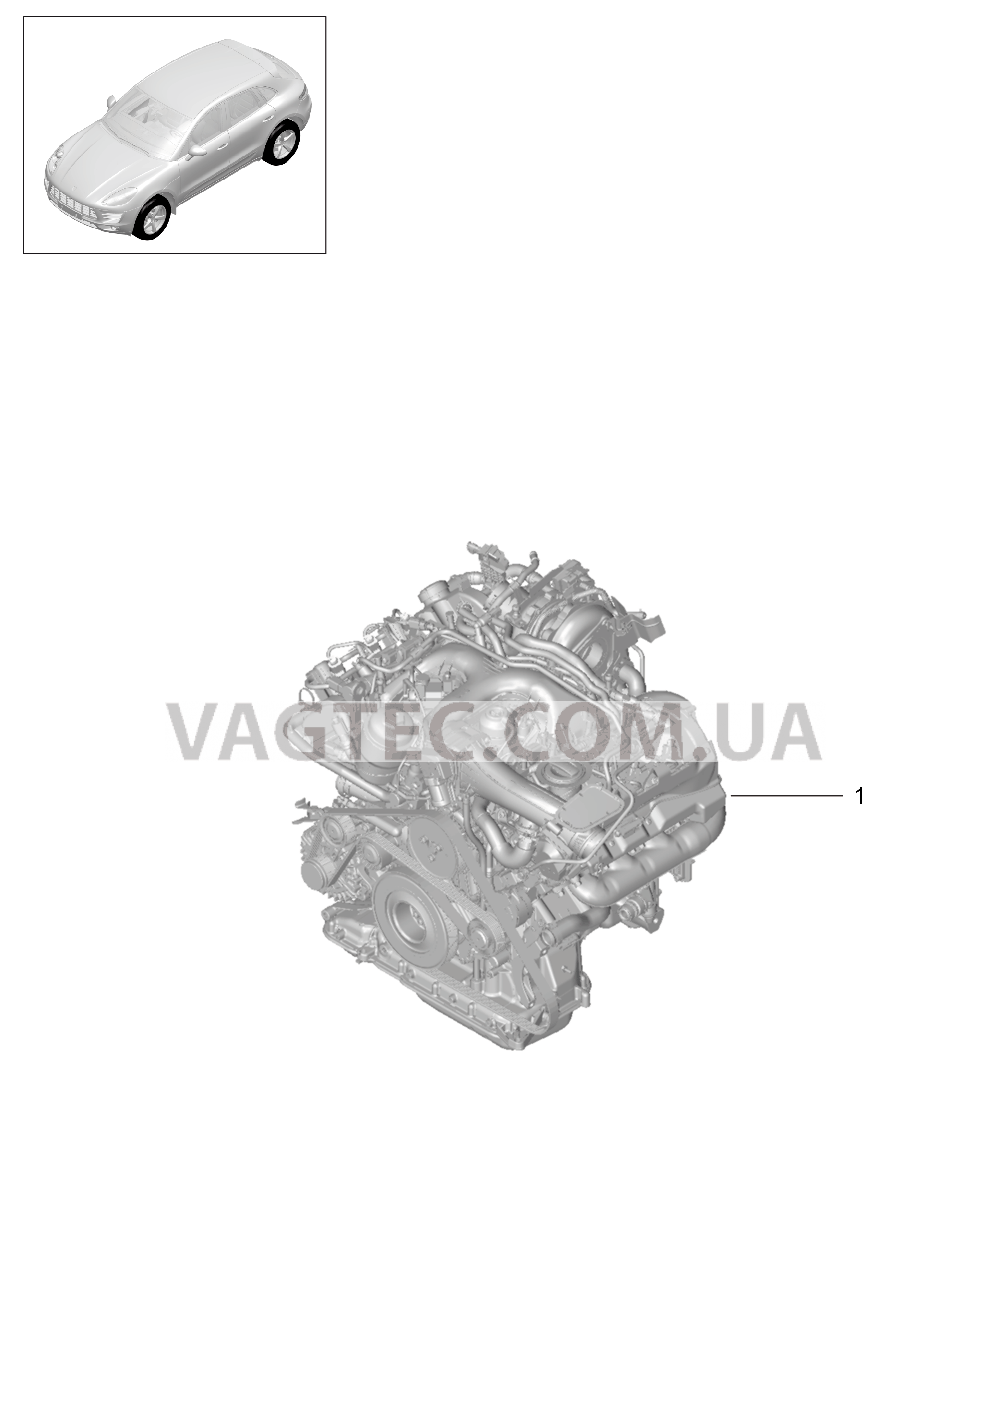 101-010 Запасной двигатель, с, Ведомый диск, PDK
						
						MCD.UD, MCT.BA/BB/BC для PORSCHE Macan 2014-2017